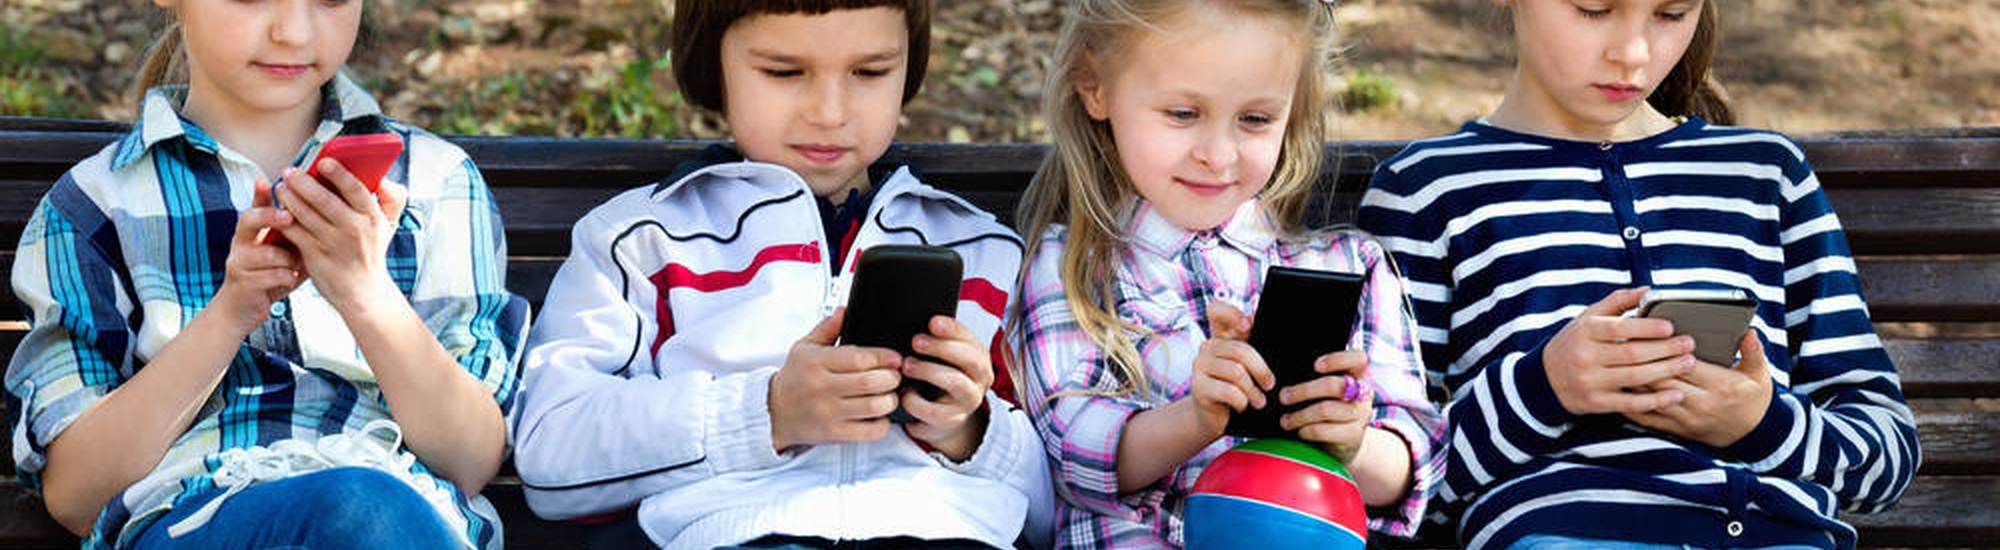 Телефонная зависимость у детей. Зависимые дети от телефона видео. Телефон для девочек 10 лет. Современное поколение детей зависящее от мобильных.